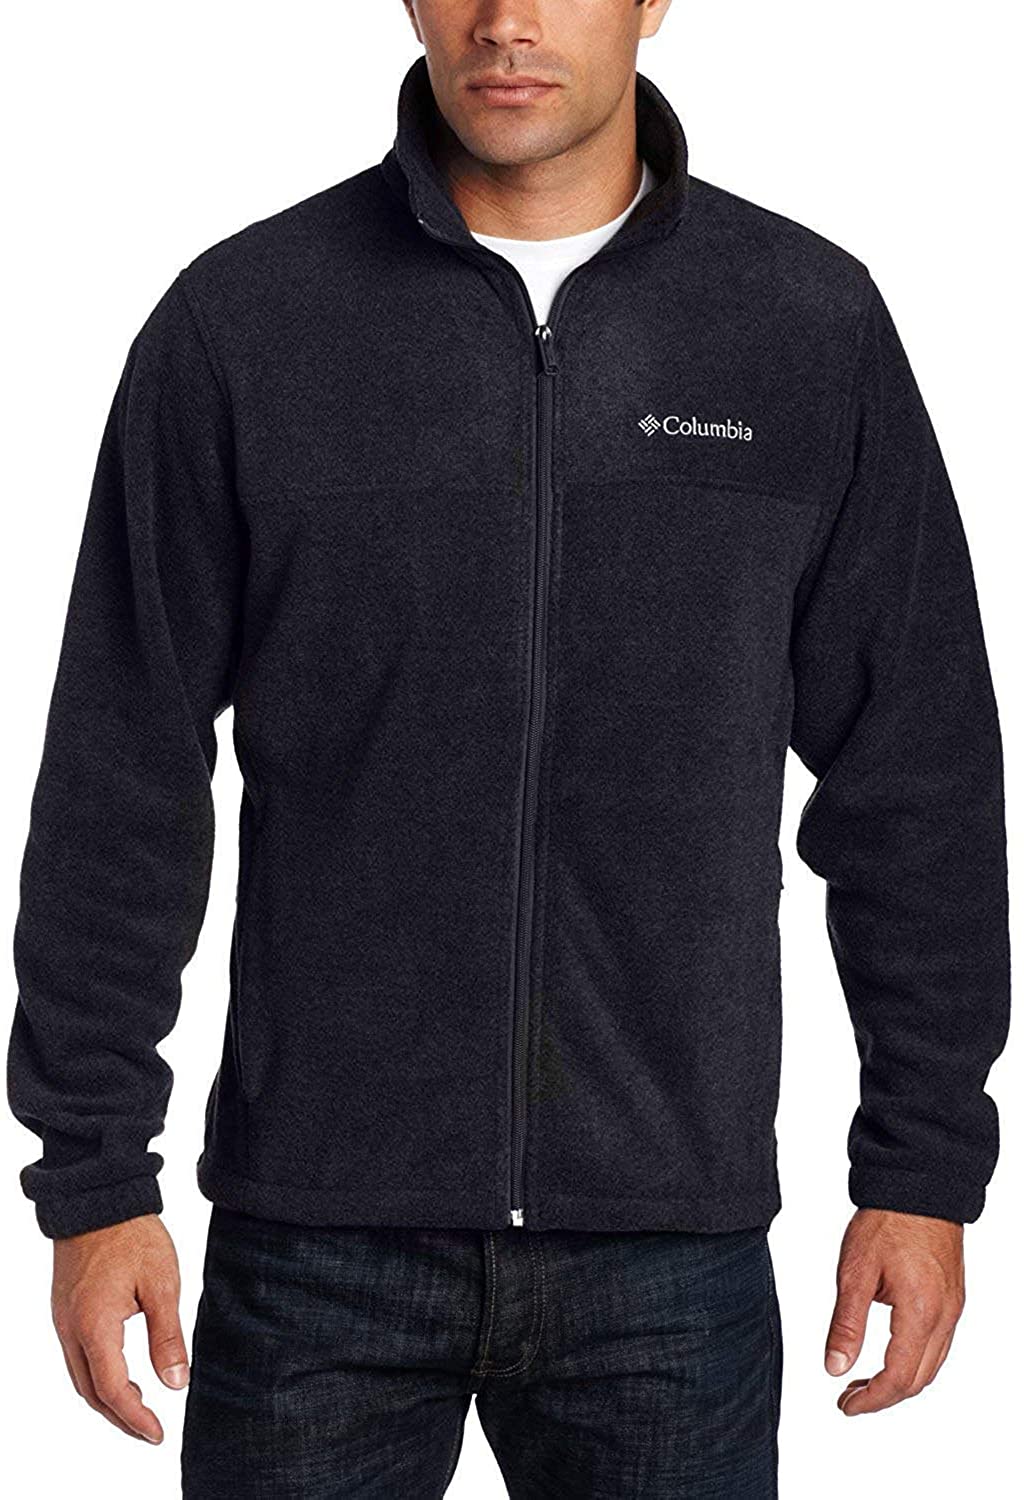 Derfra ciffer Bourgogne Columbia Men's Granite Mountain Fleece Jacket | eBay